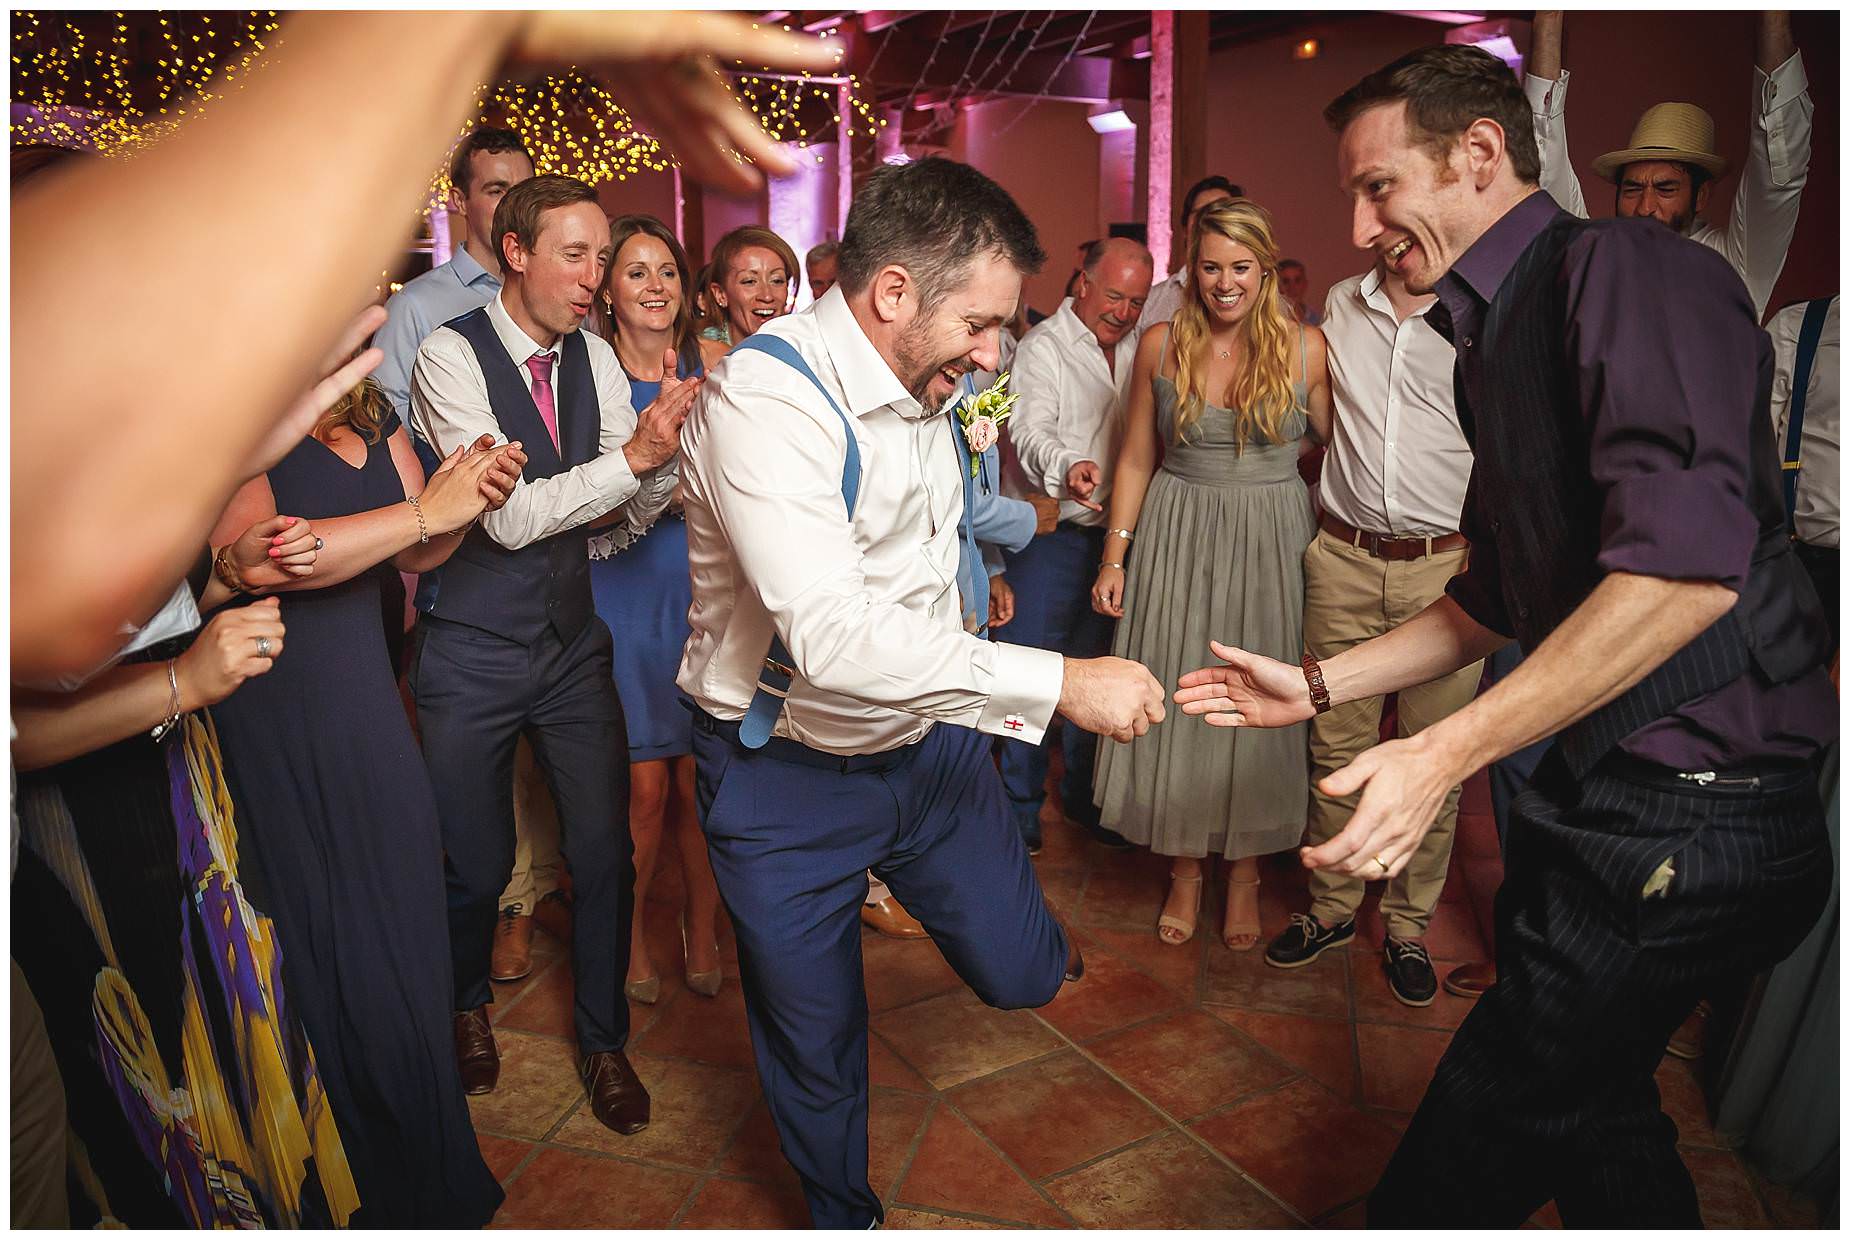 break dancing at wedding